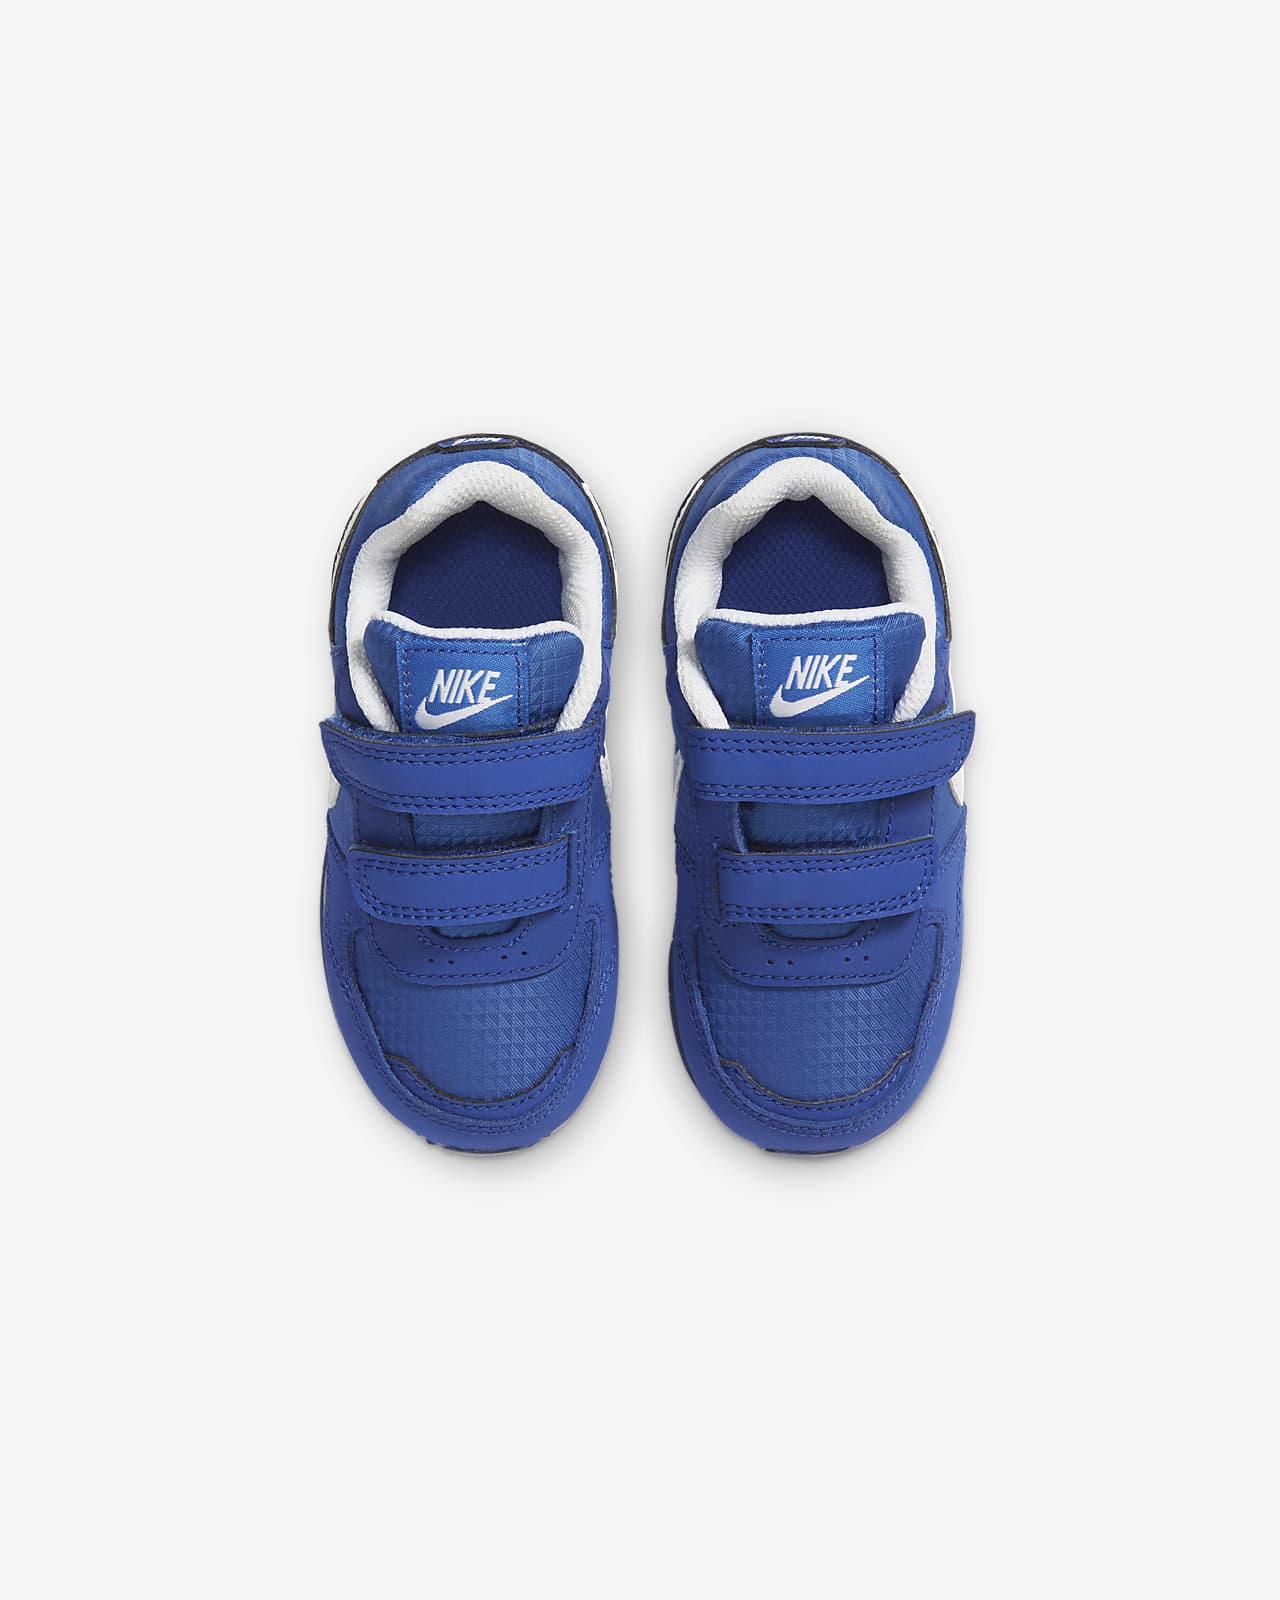 Nike MD Runner Infant/Toddler Boys 